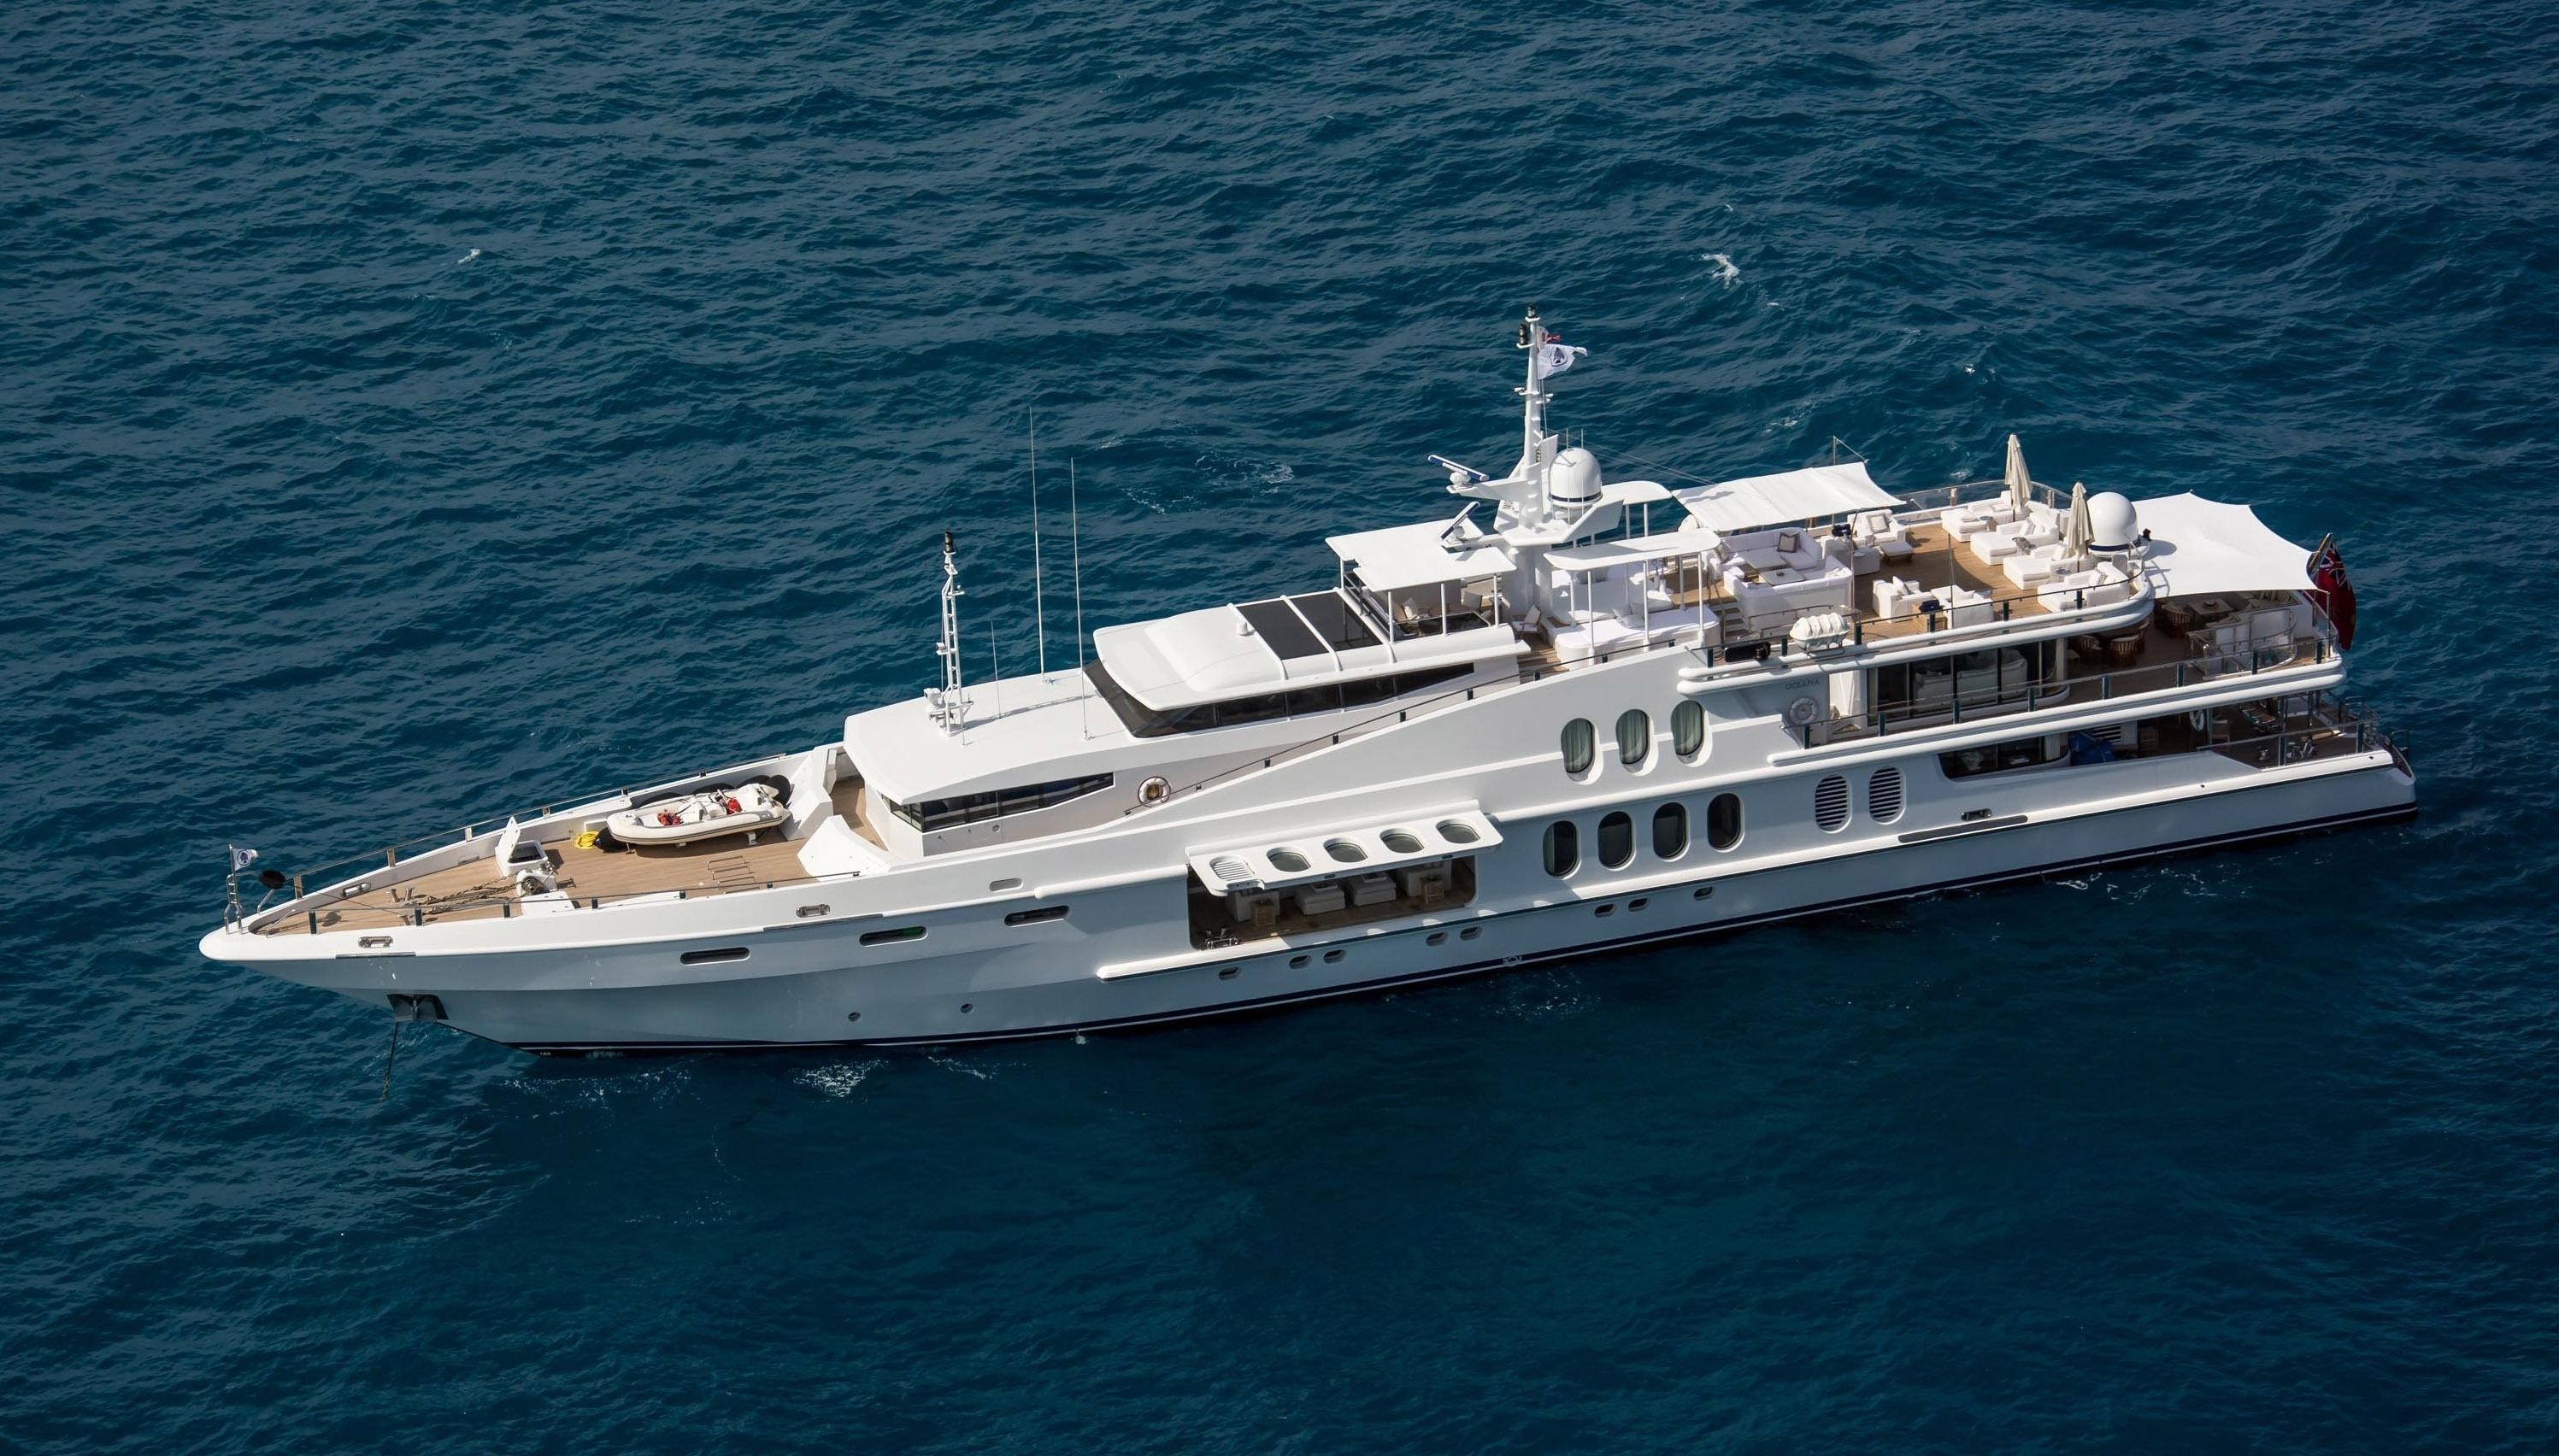 The 55m Yacht OCEANA